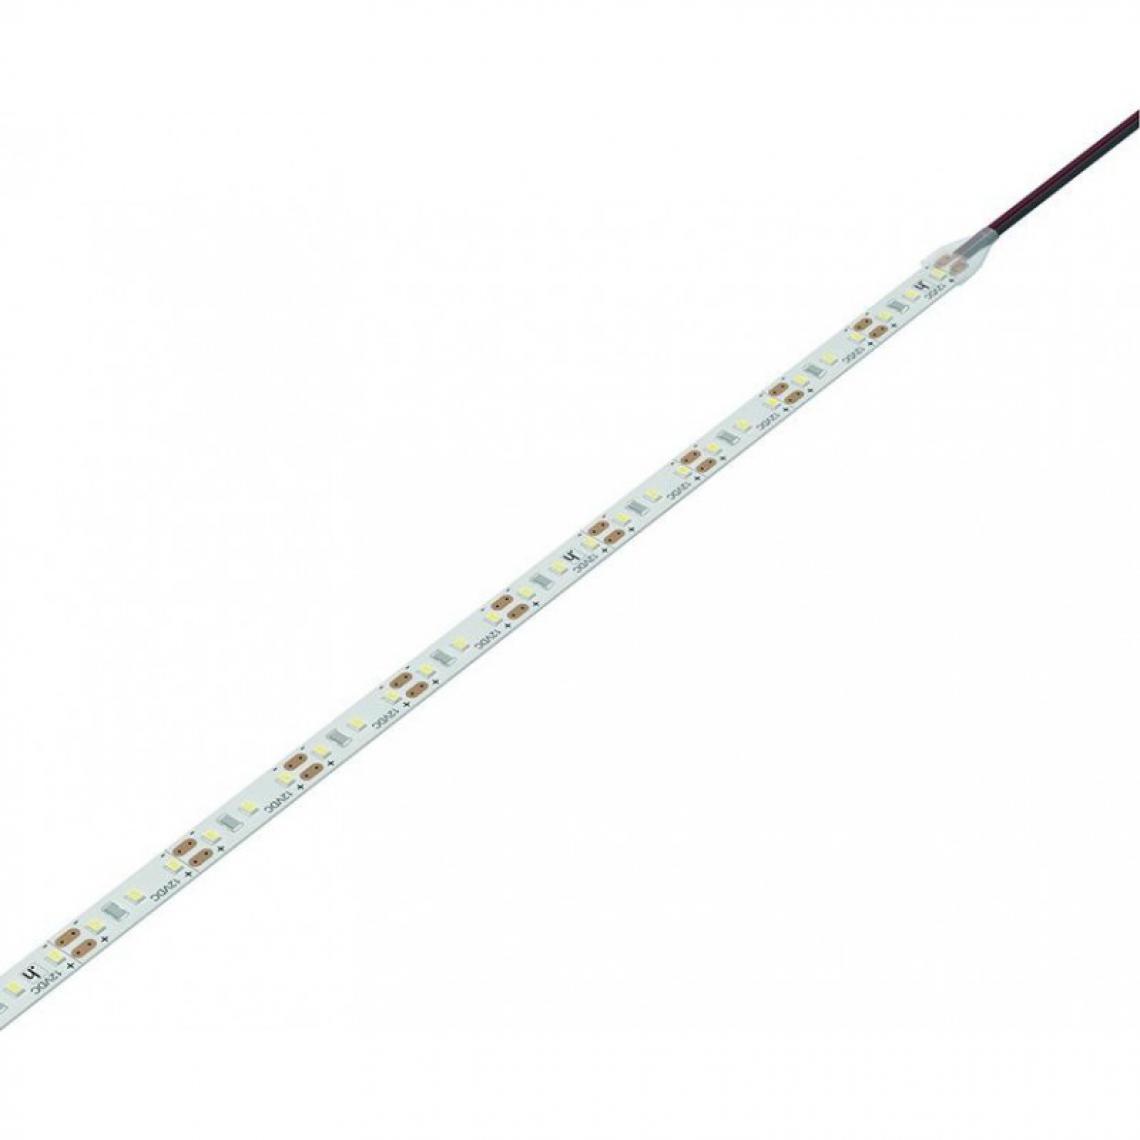 marque generique - Lampe Versa Inside120 24VDC cw L 5m 9,6W/m 2x1.8m MP2 - Ruban LED